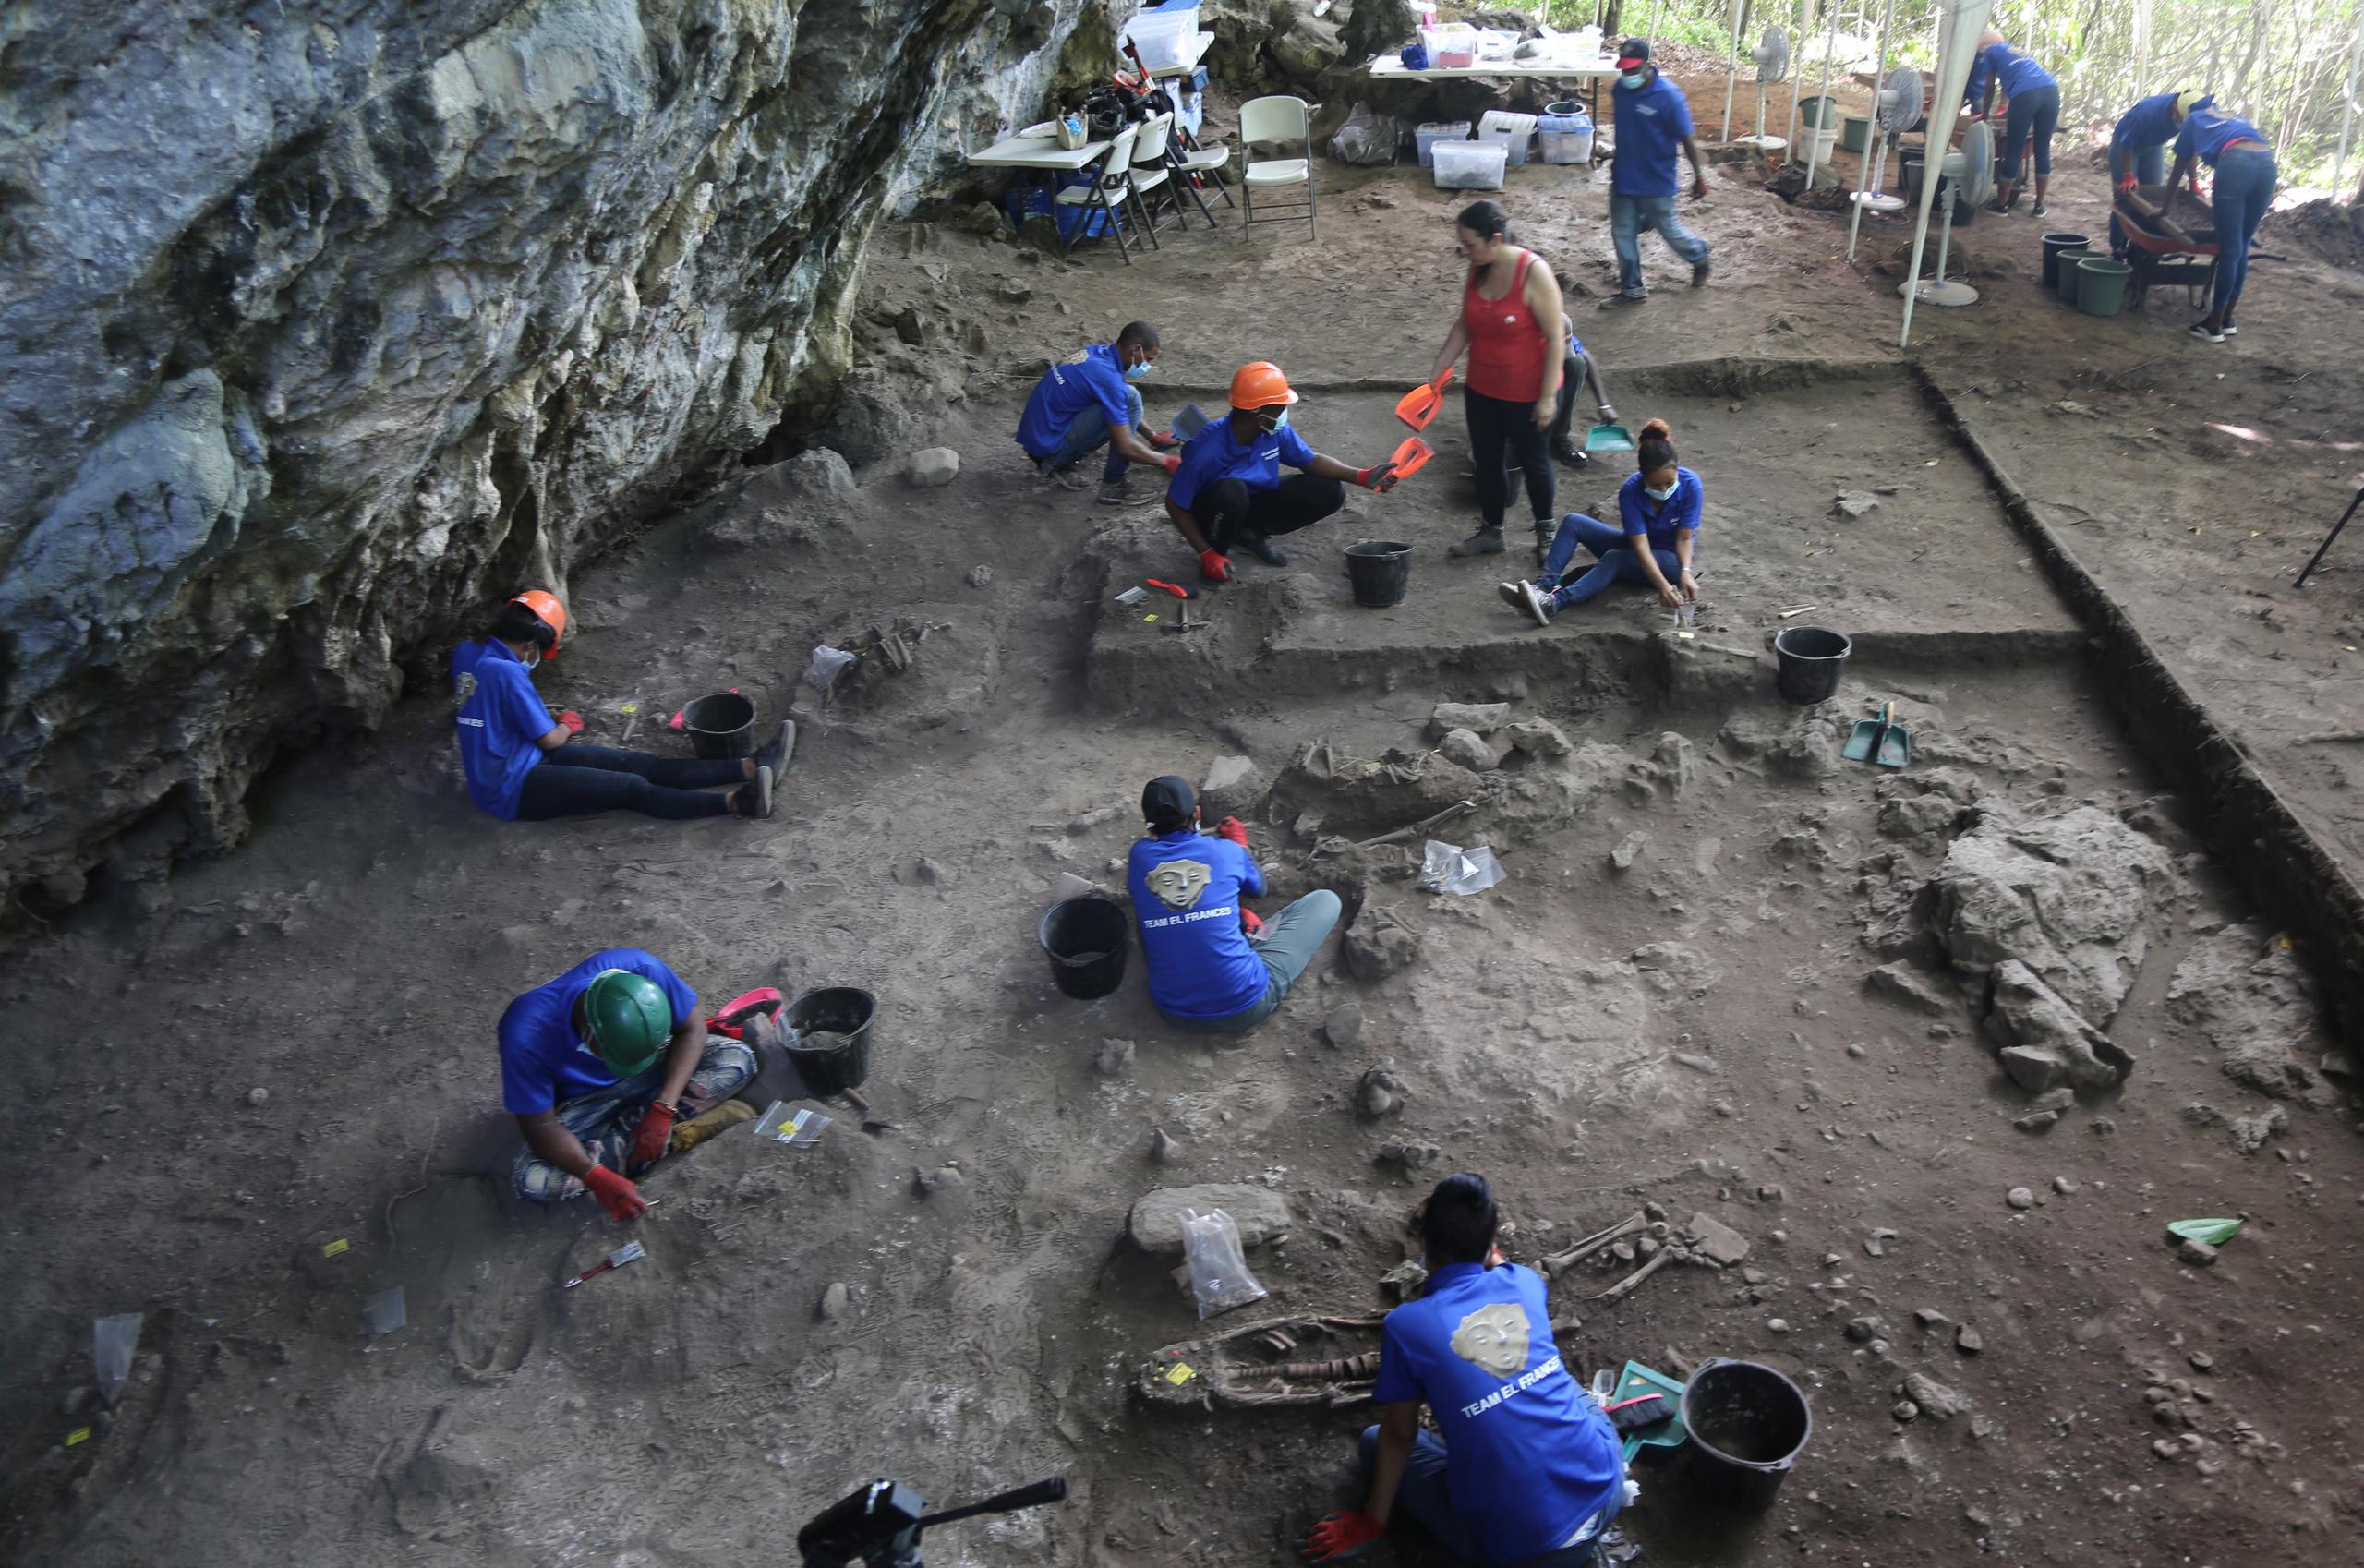 Fotografía cedida por Adolfo López donde se muestra un grupo arqueólogos trabajando en un sitio de un hallazgo arqueológico en Santo Domingo, en República Dominicana. (EFE / Adolfo López)